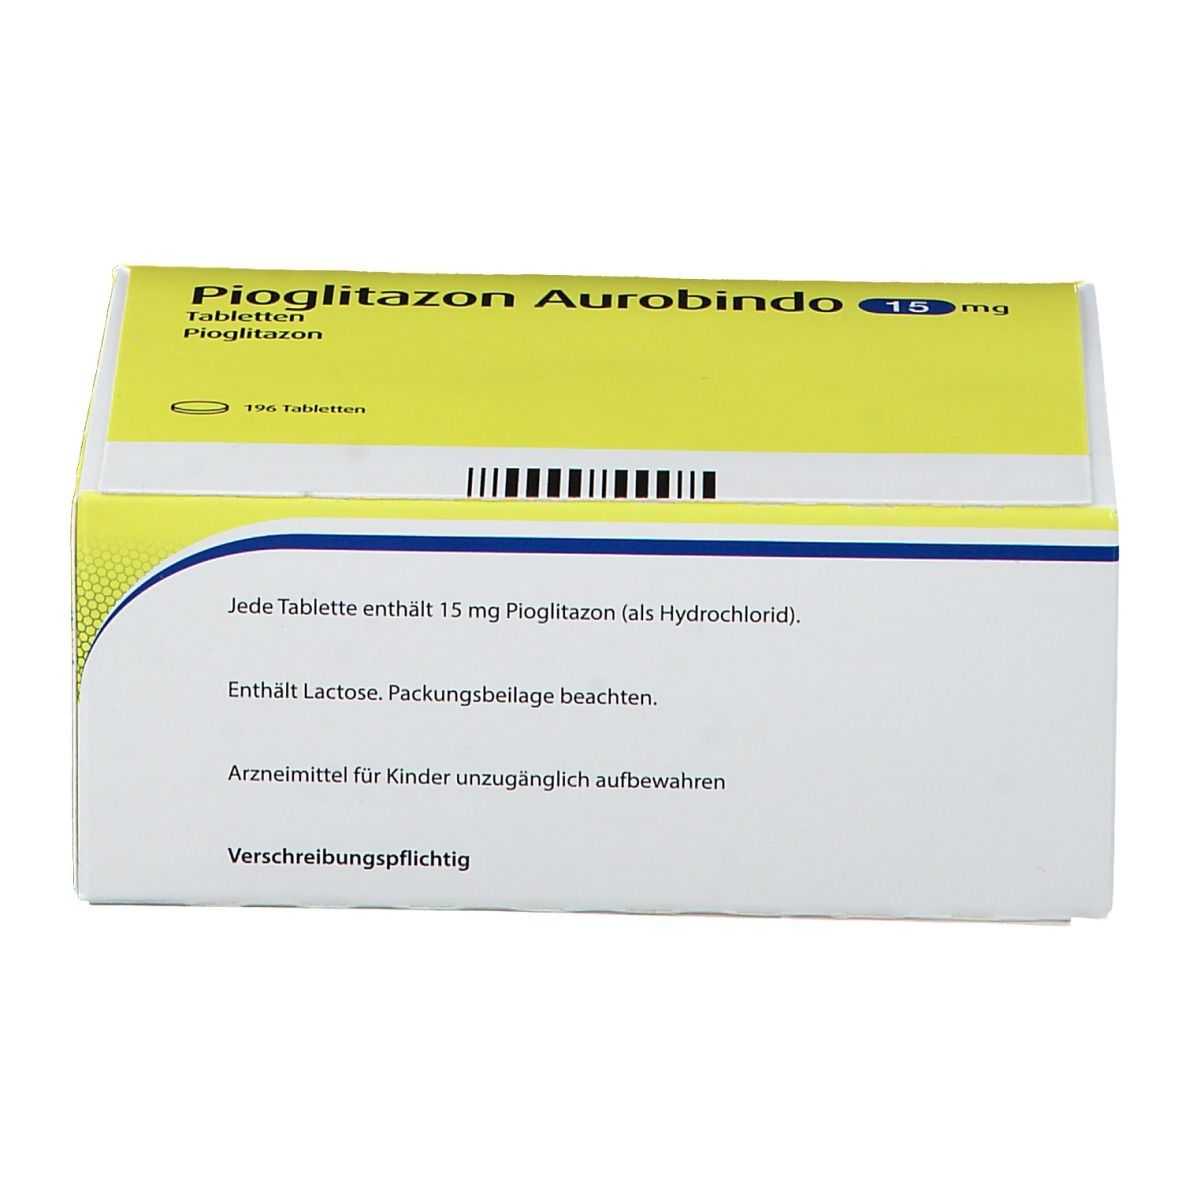 Pioglitazon Aurobindo 15 mg